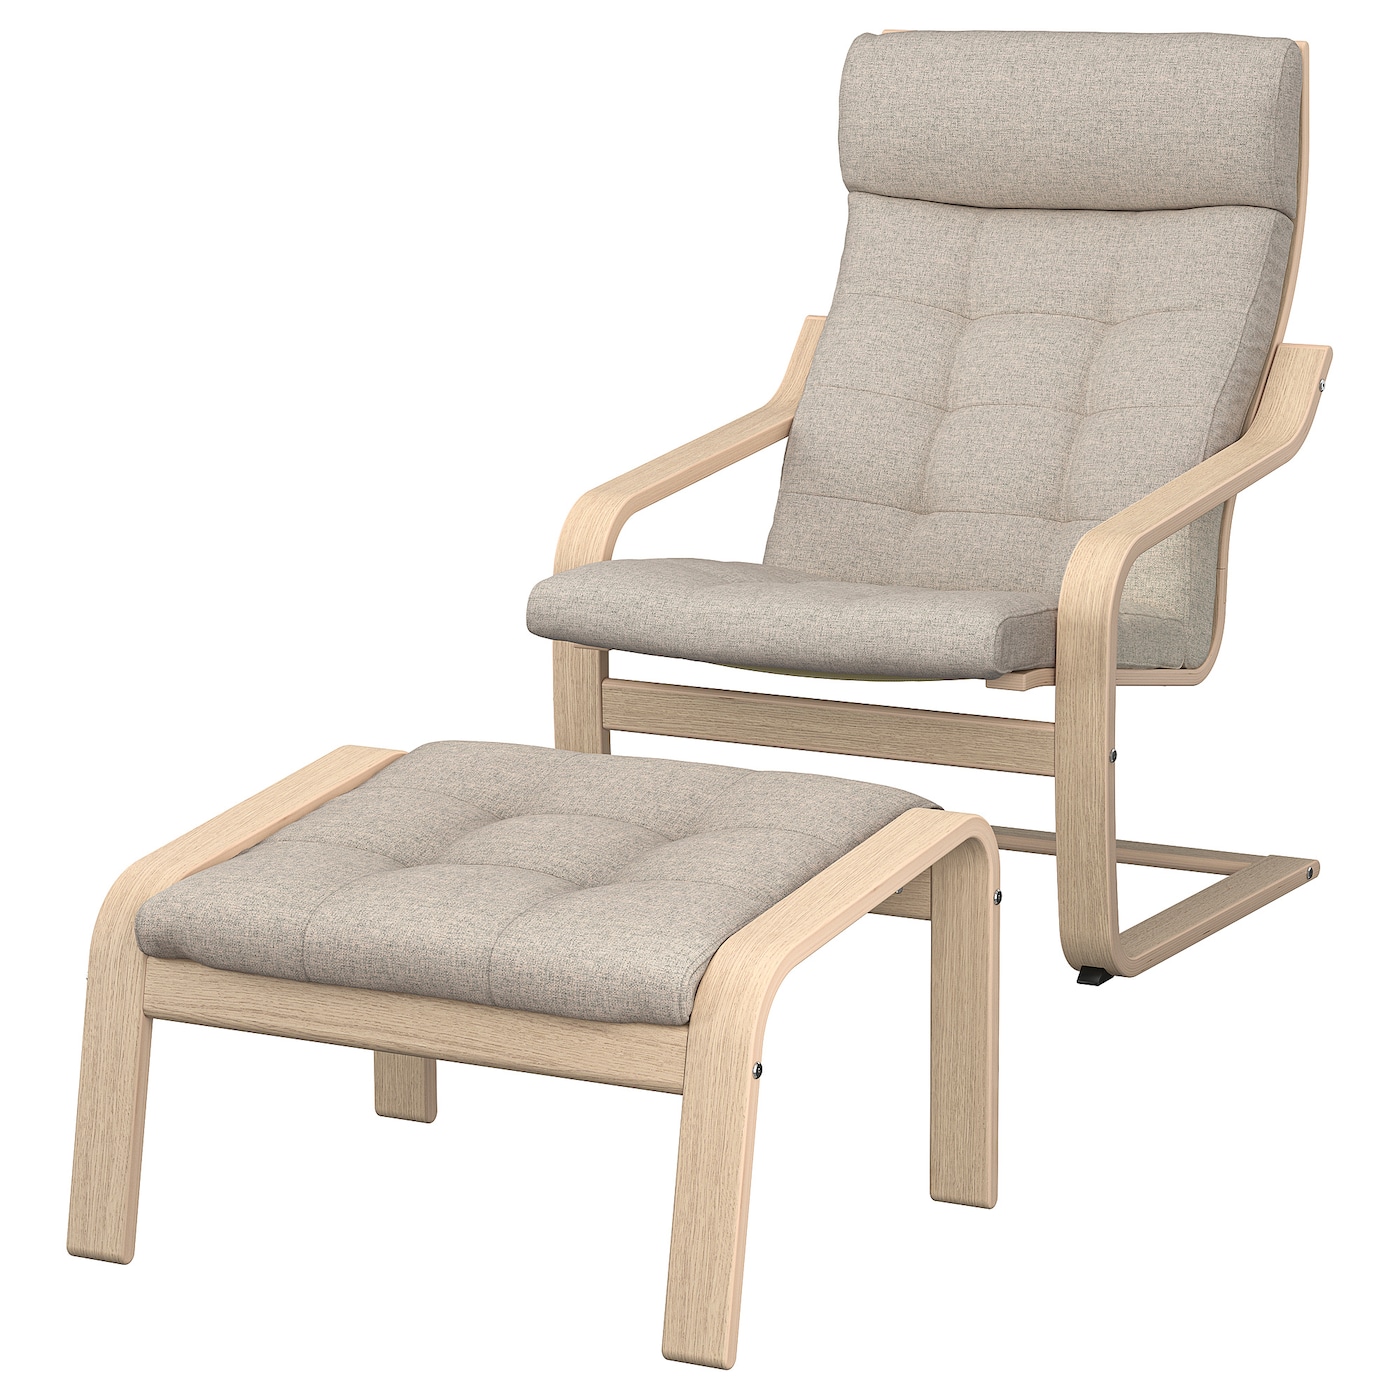 ПОЭНГ Кресло и подставка для ног, дубовый шпон светлый/Гуннаред бежевый POÄNG IKEA